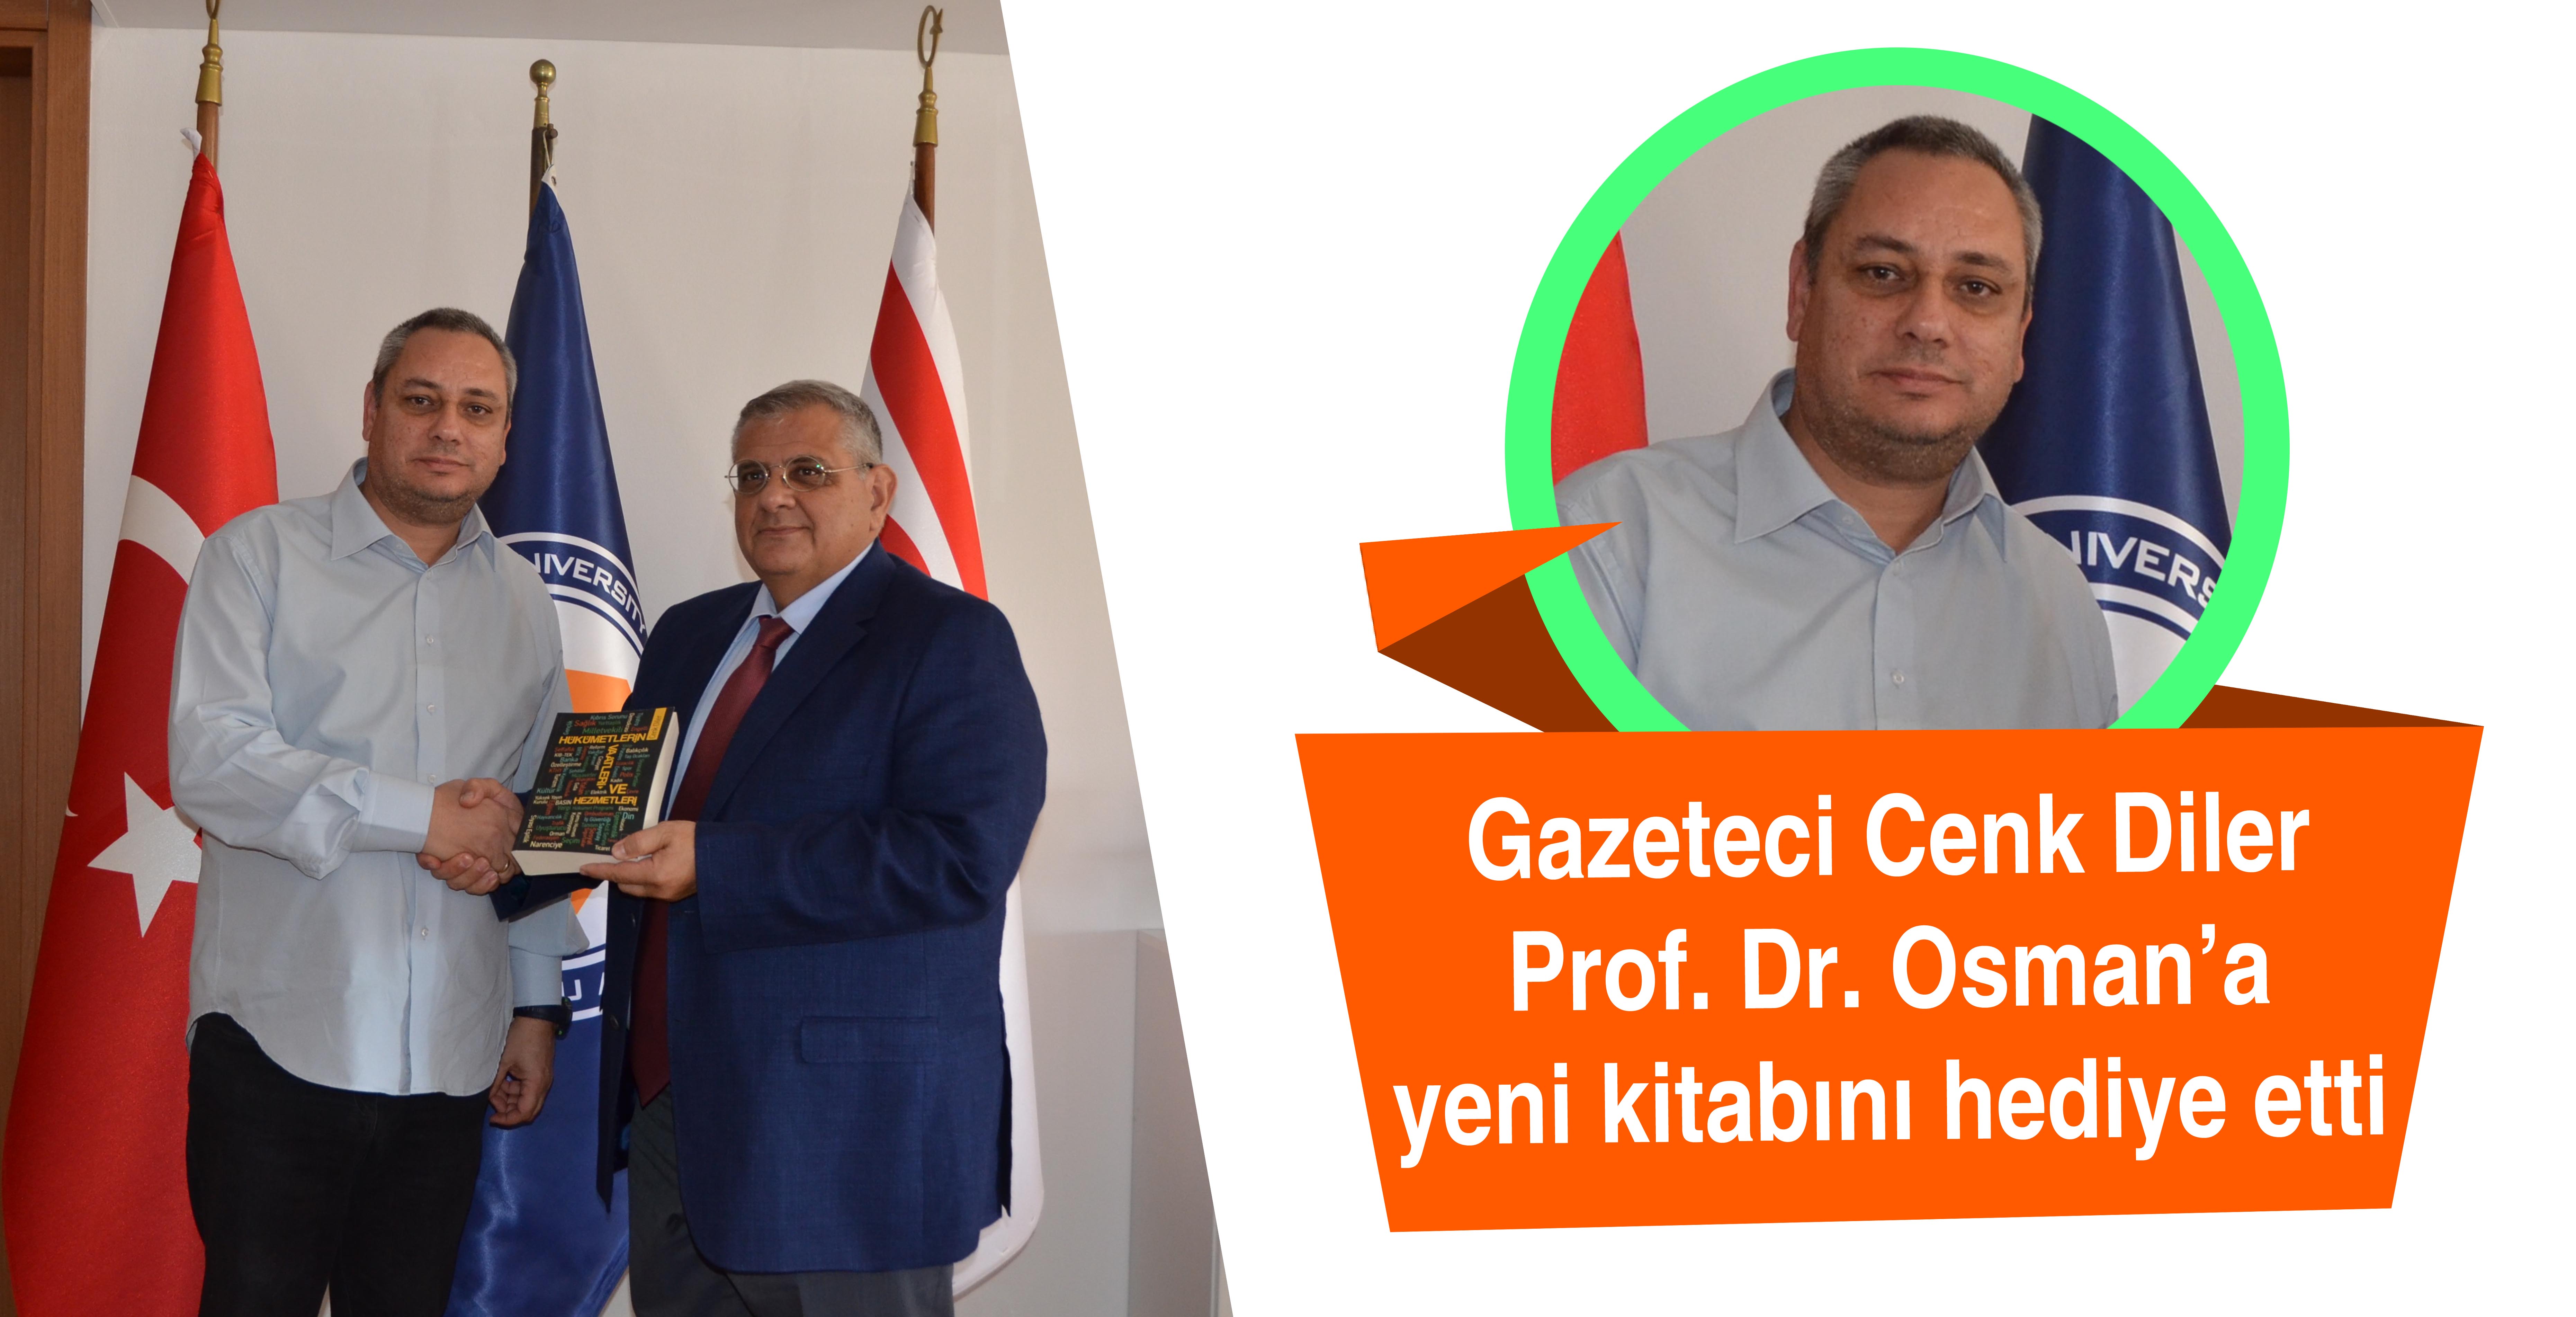 Gazeteci Cenk Diler Prof. Dr. Osam’a yeni kitabını hediye etti